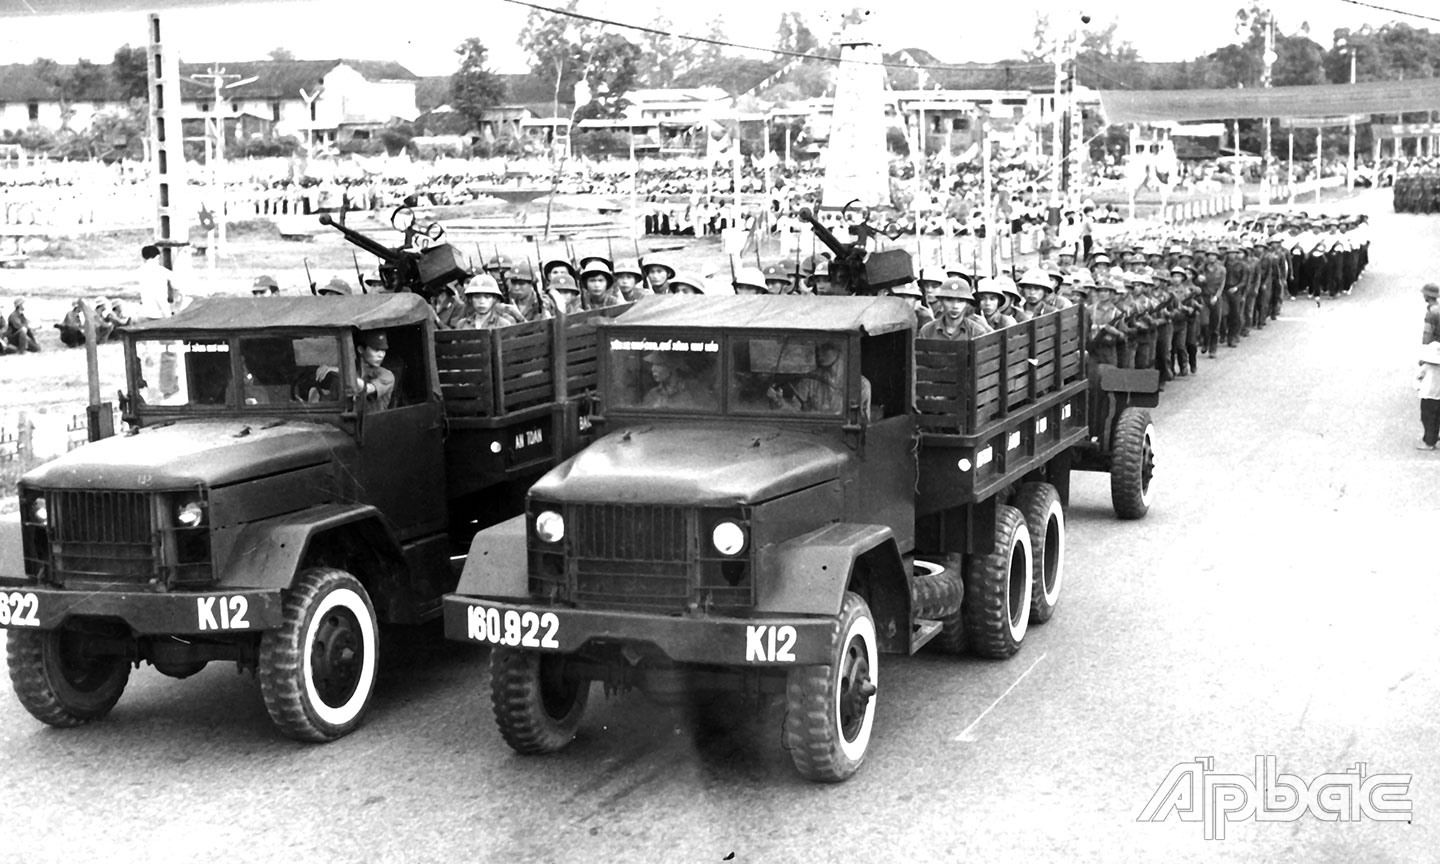 Các lực lượng quân đội diễu hành qua sân lễ tại Lễ kỷ niệm 33 năm Quốc khánh (2-9-1945 - 2-9-1978).	                                                  ảnh: NGUYỄN THIỂU